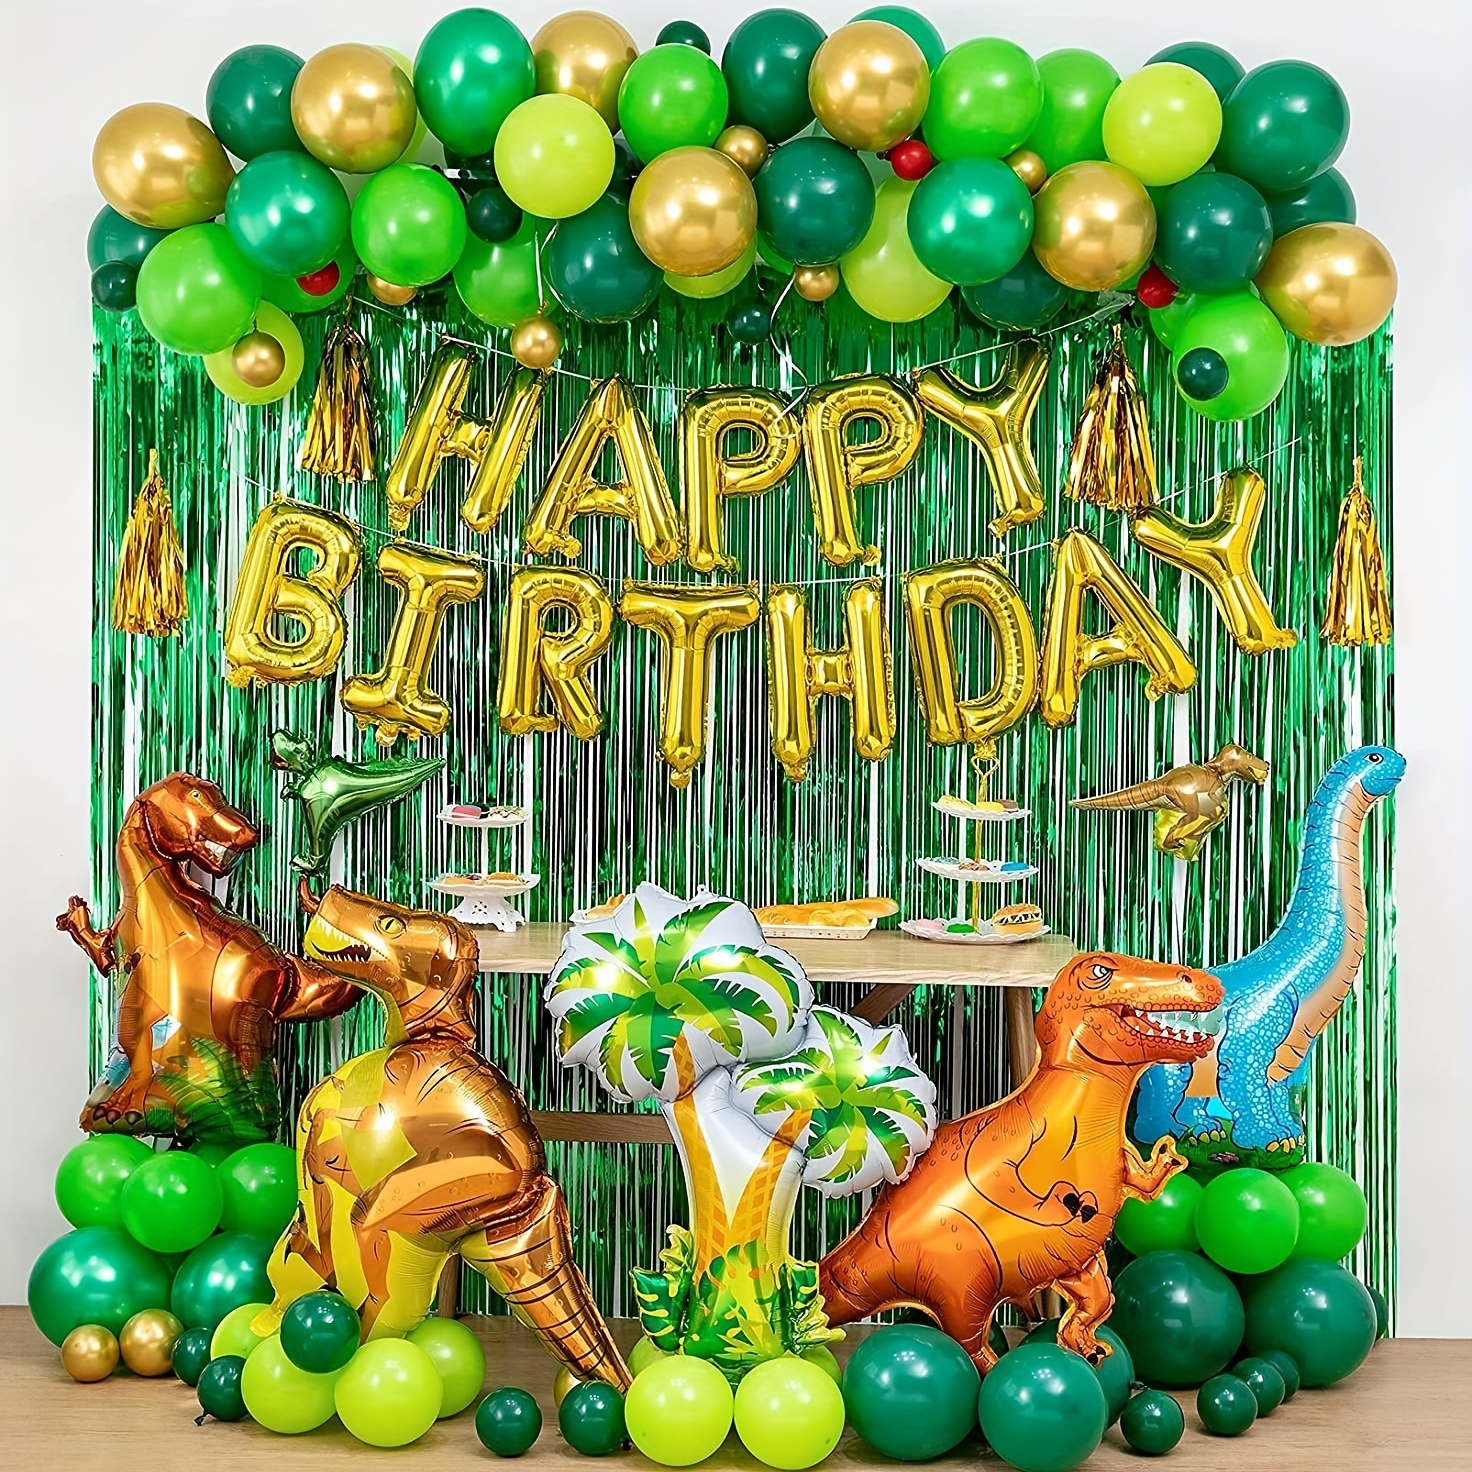 El número 2 en forma de dinosaurio es adecuado para adornos de una fiesta  de cumpleaños al estilo de los dinosaurios.